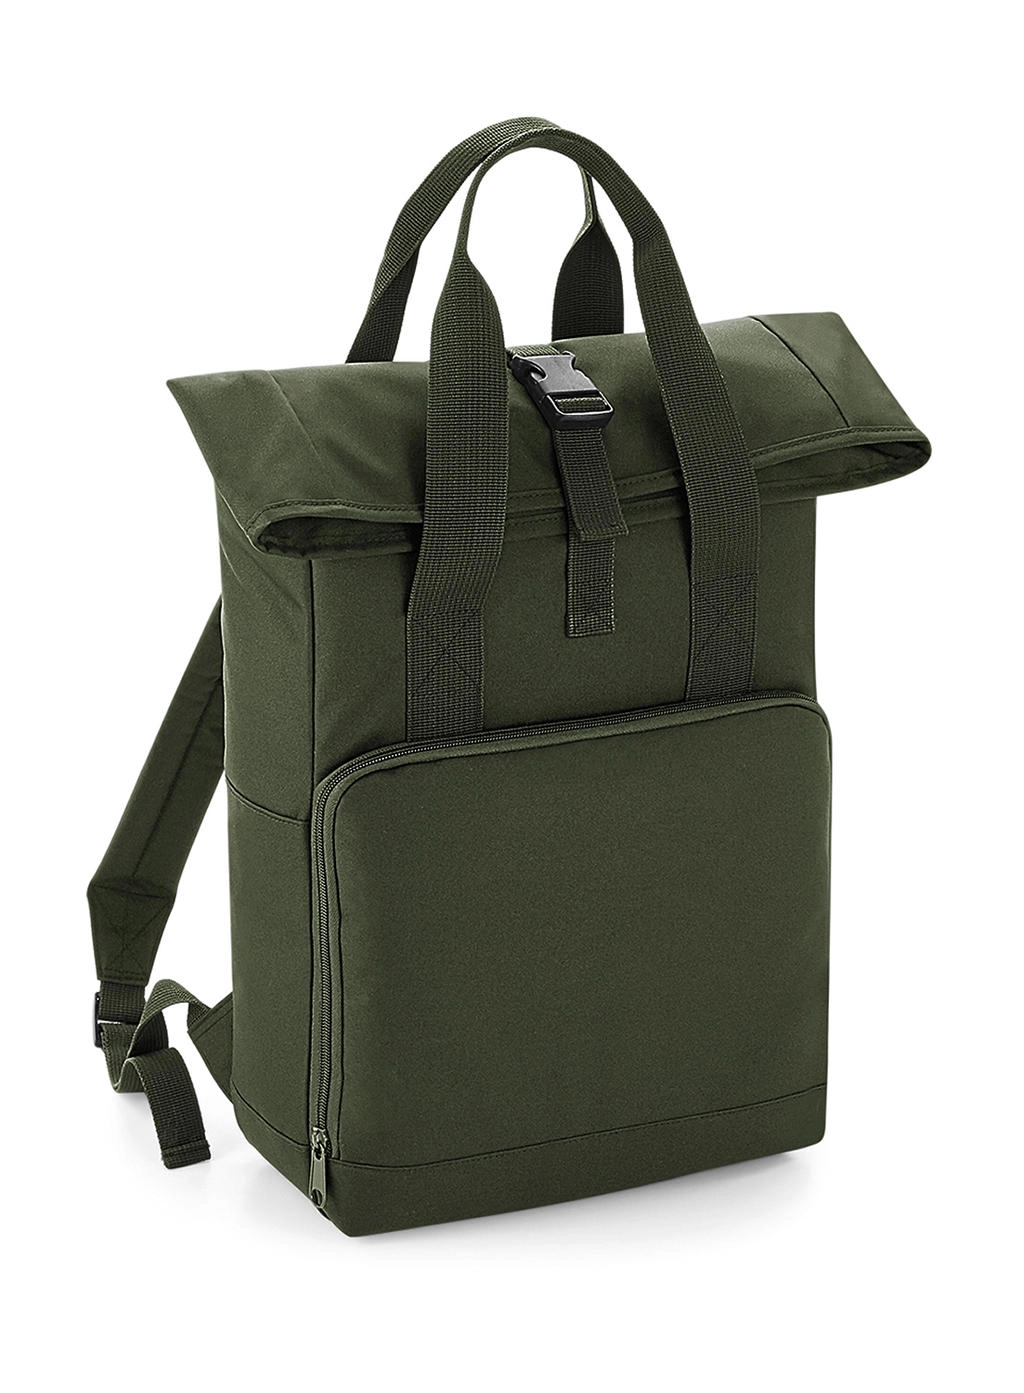 Twin Handle Roll-Top Backpack zum Besticken und Bedrucken in der Farbe Olive Green mit Ihren Logo, Schriftzug oder Motiv.